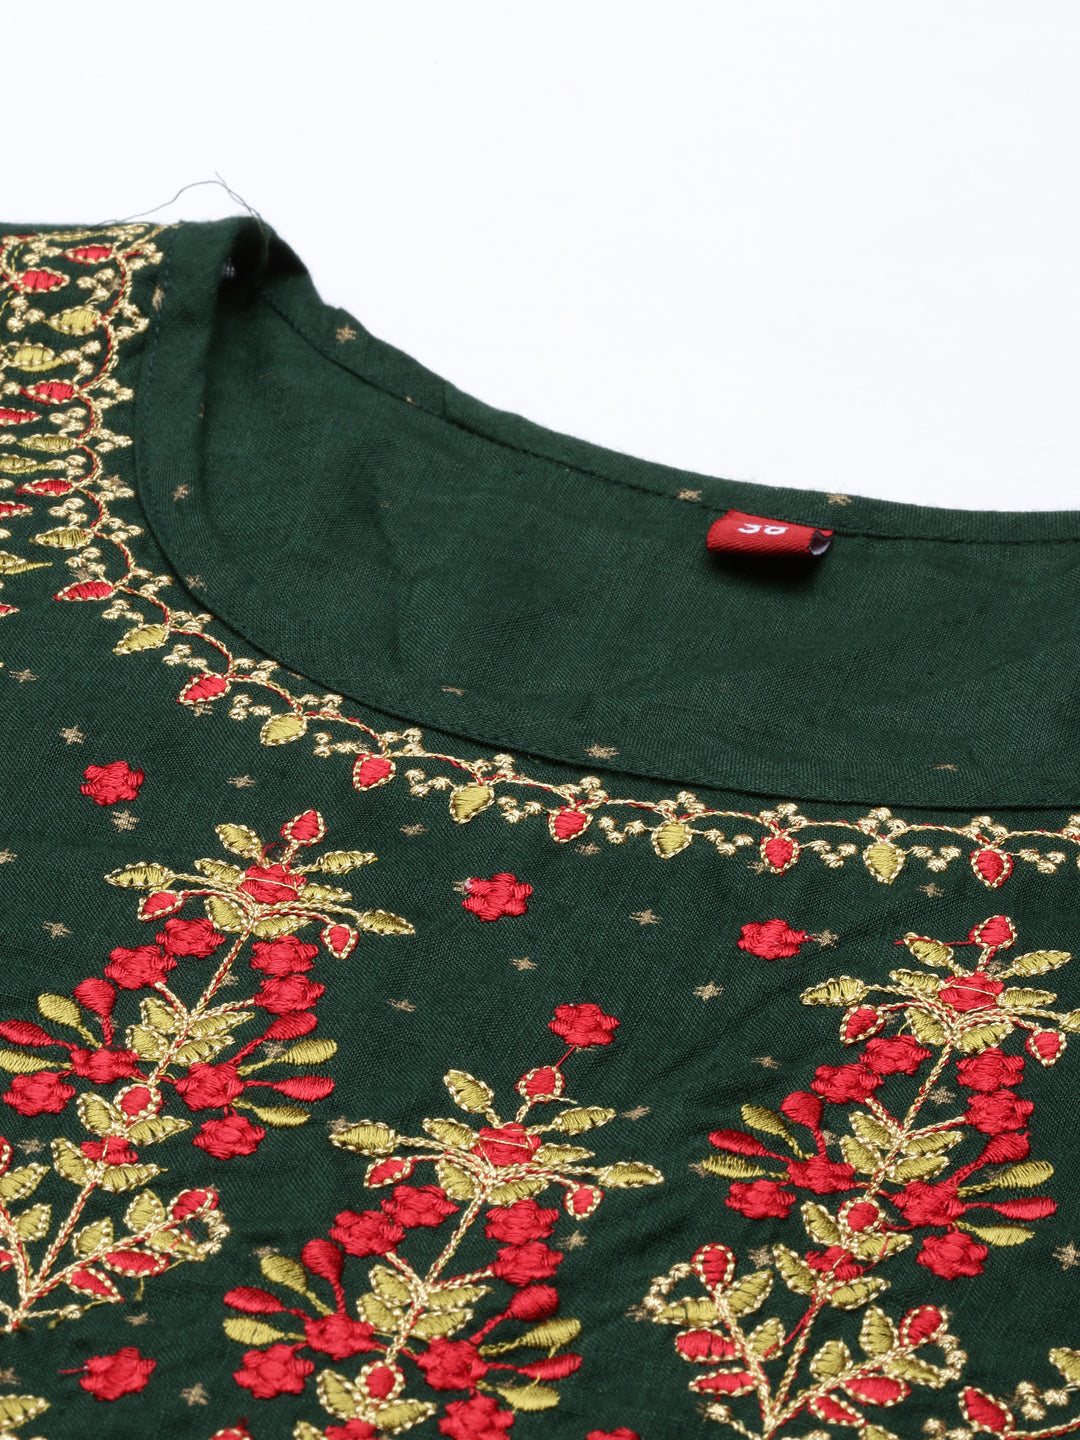 Neeru's Olive Color Slub Rayon Fabric Kurta